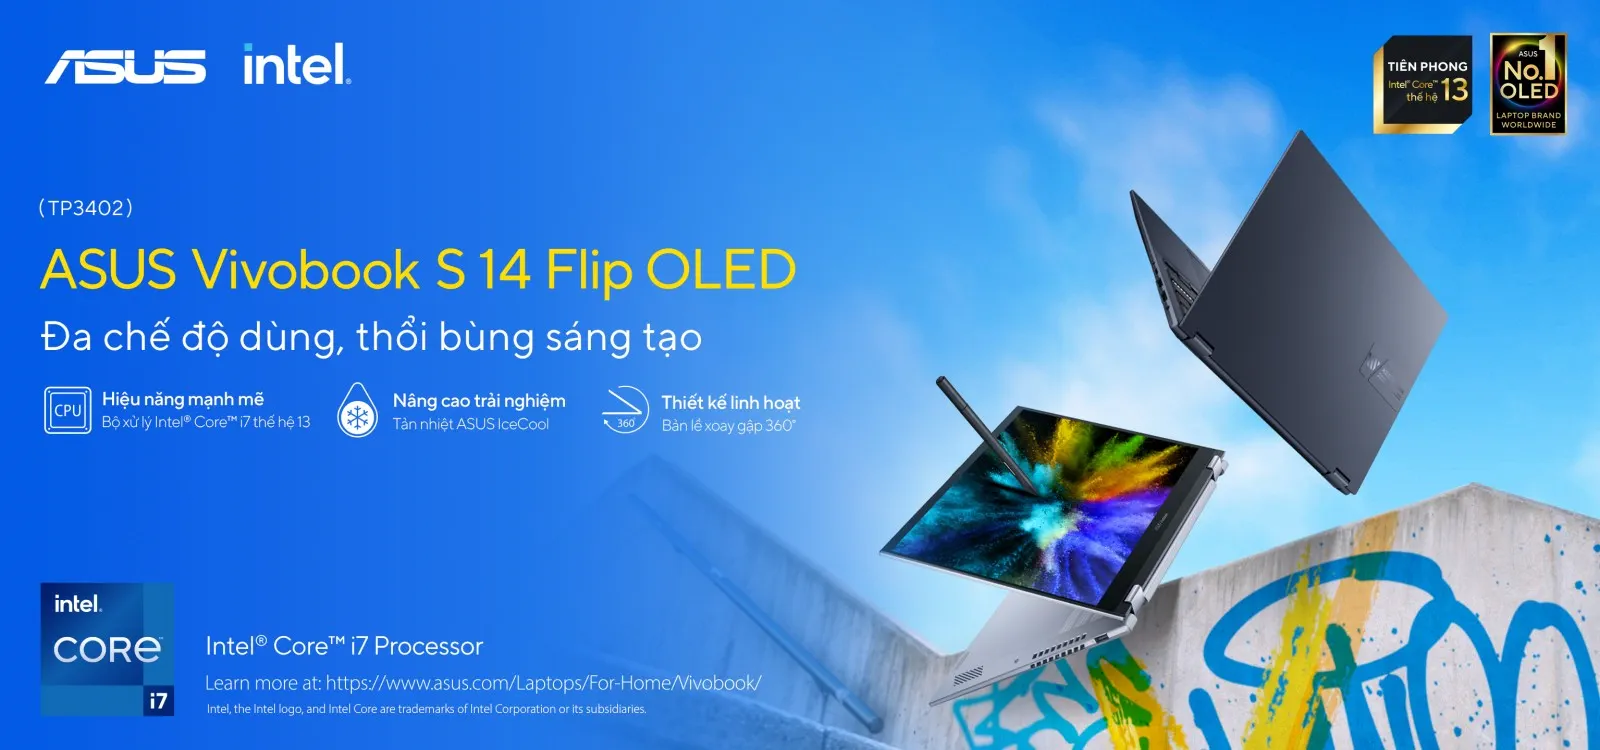 ASUS giới thiệu dải sản phẩm laptop OLED tiên phong trang bị bộ vi xử lý Intel Core thế hệ 13